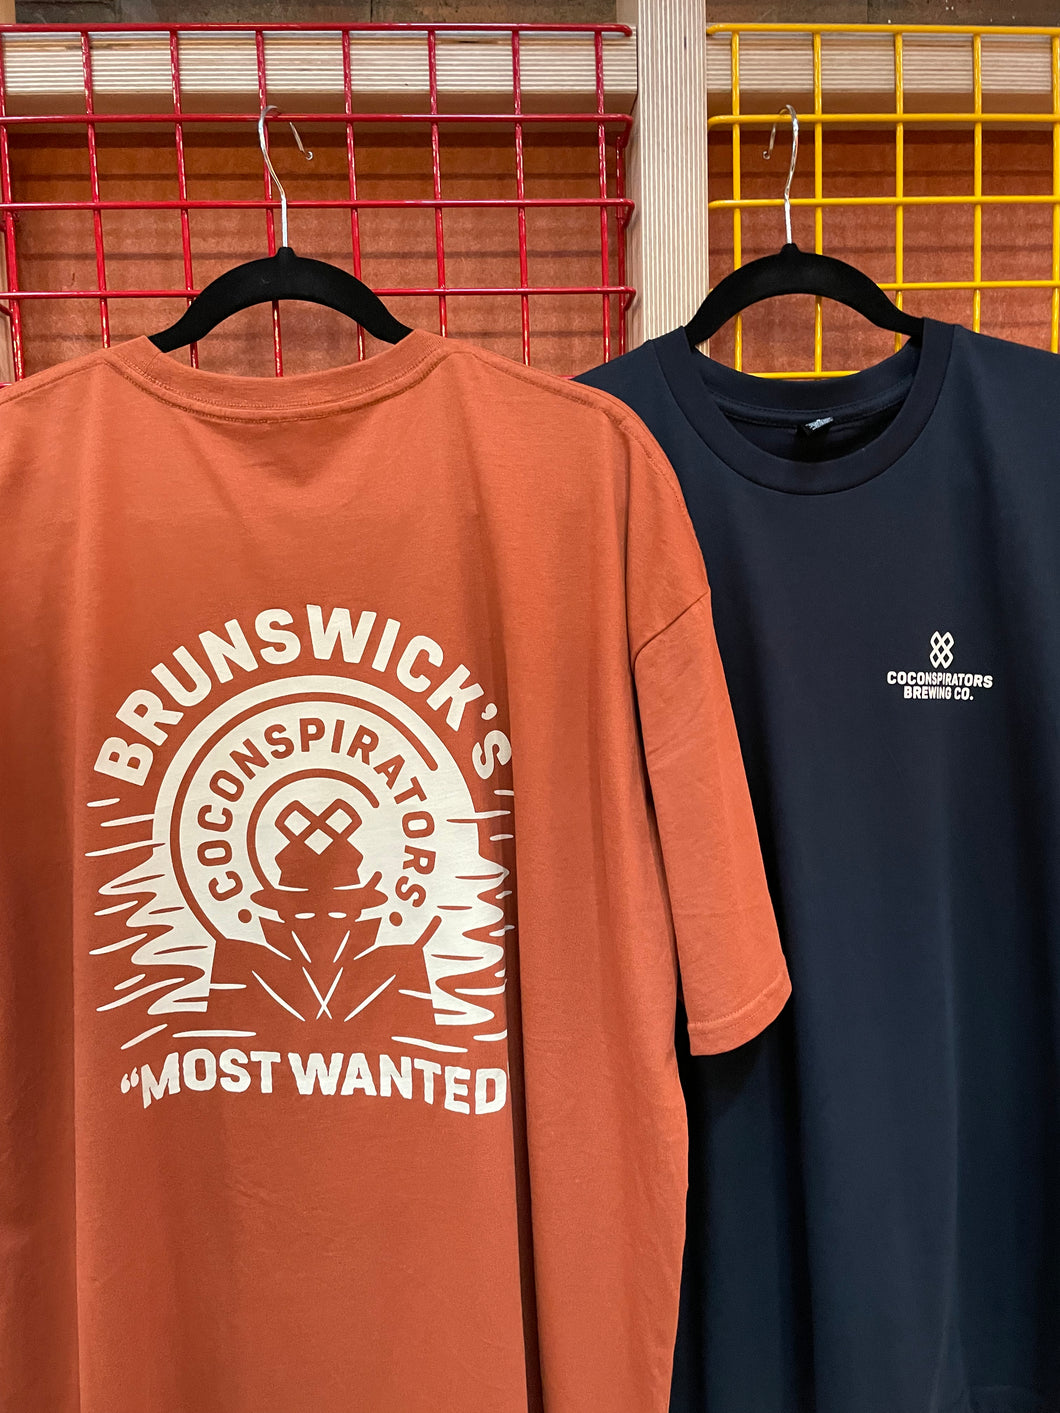 'Brunswick Most Wanted' T-shirts